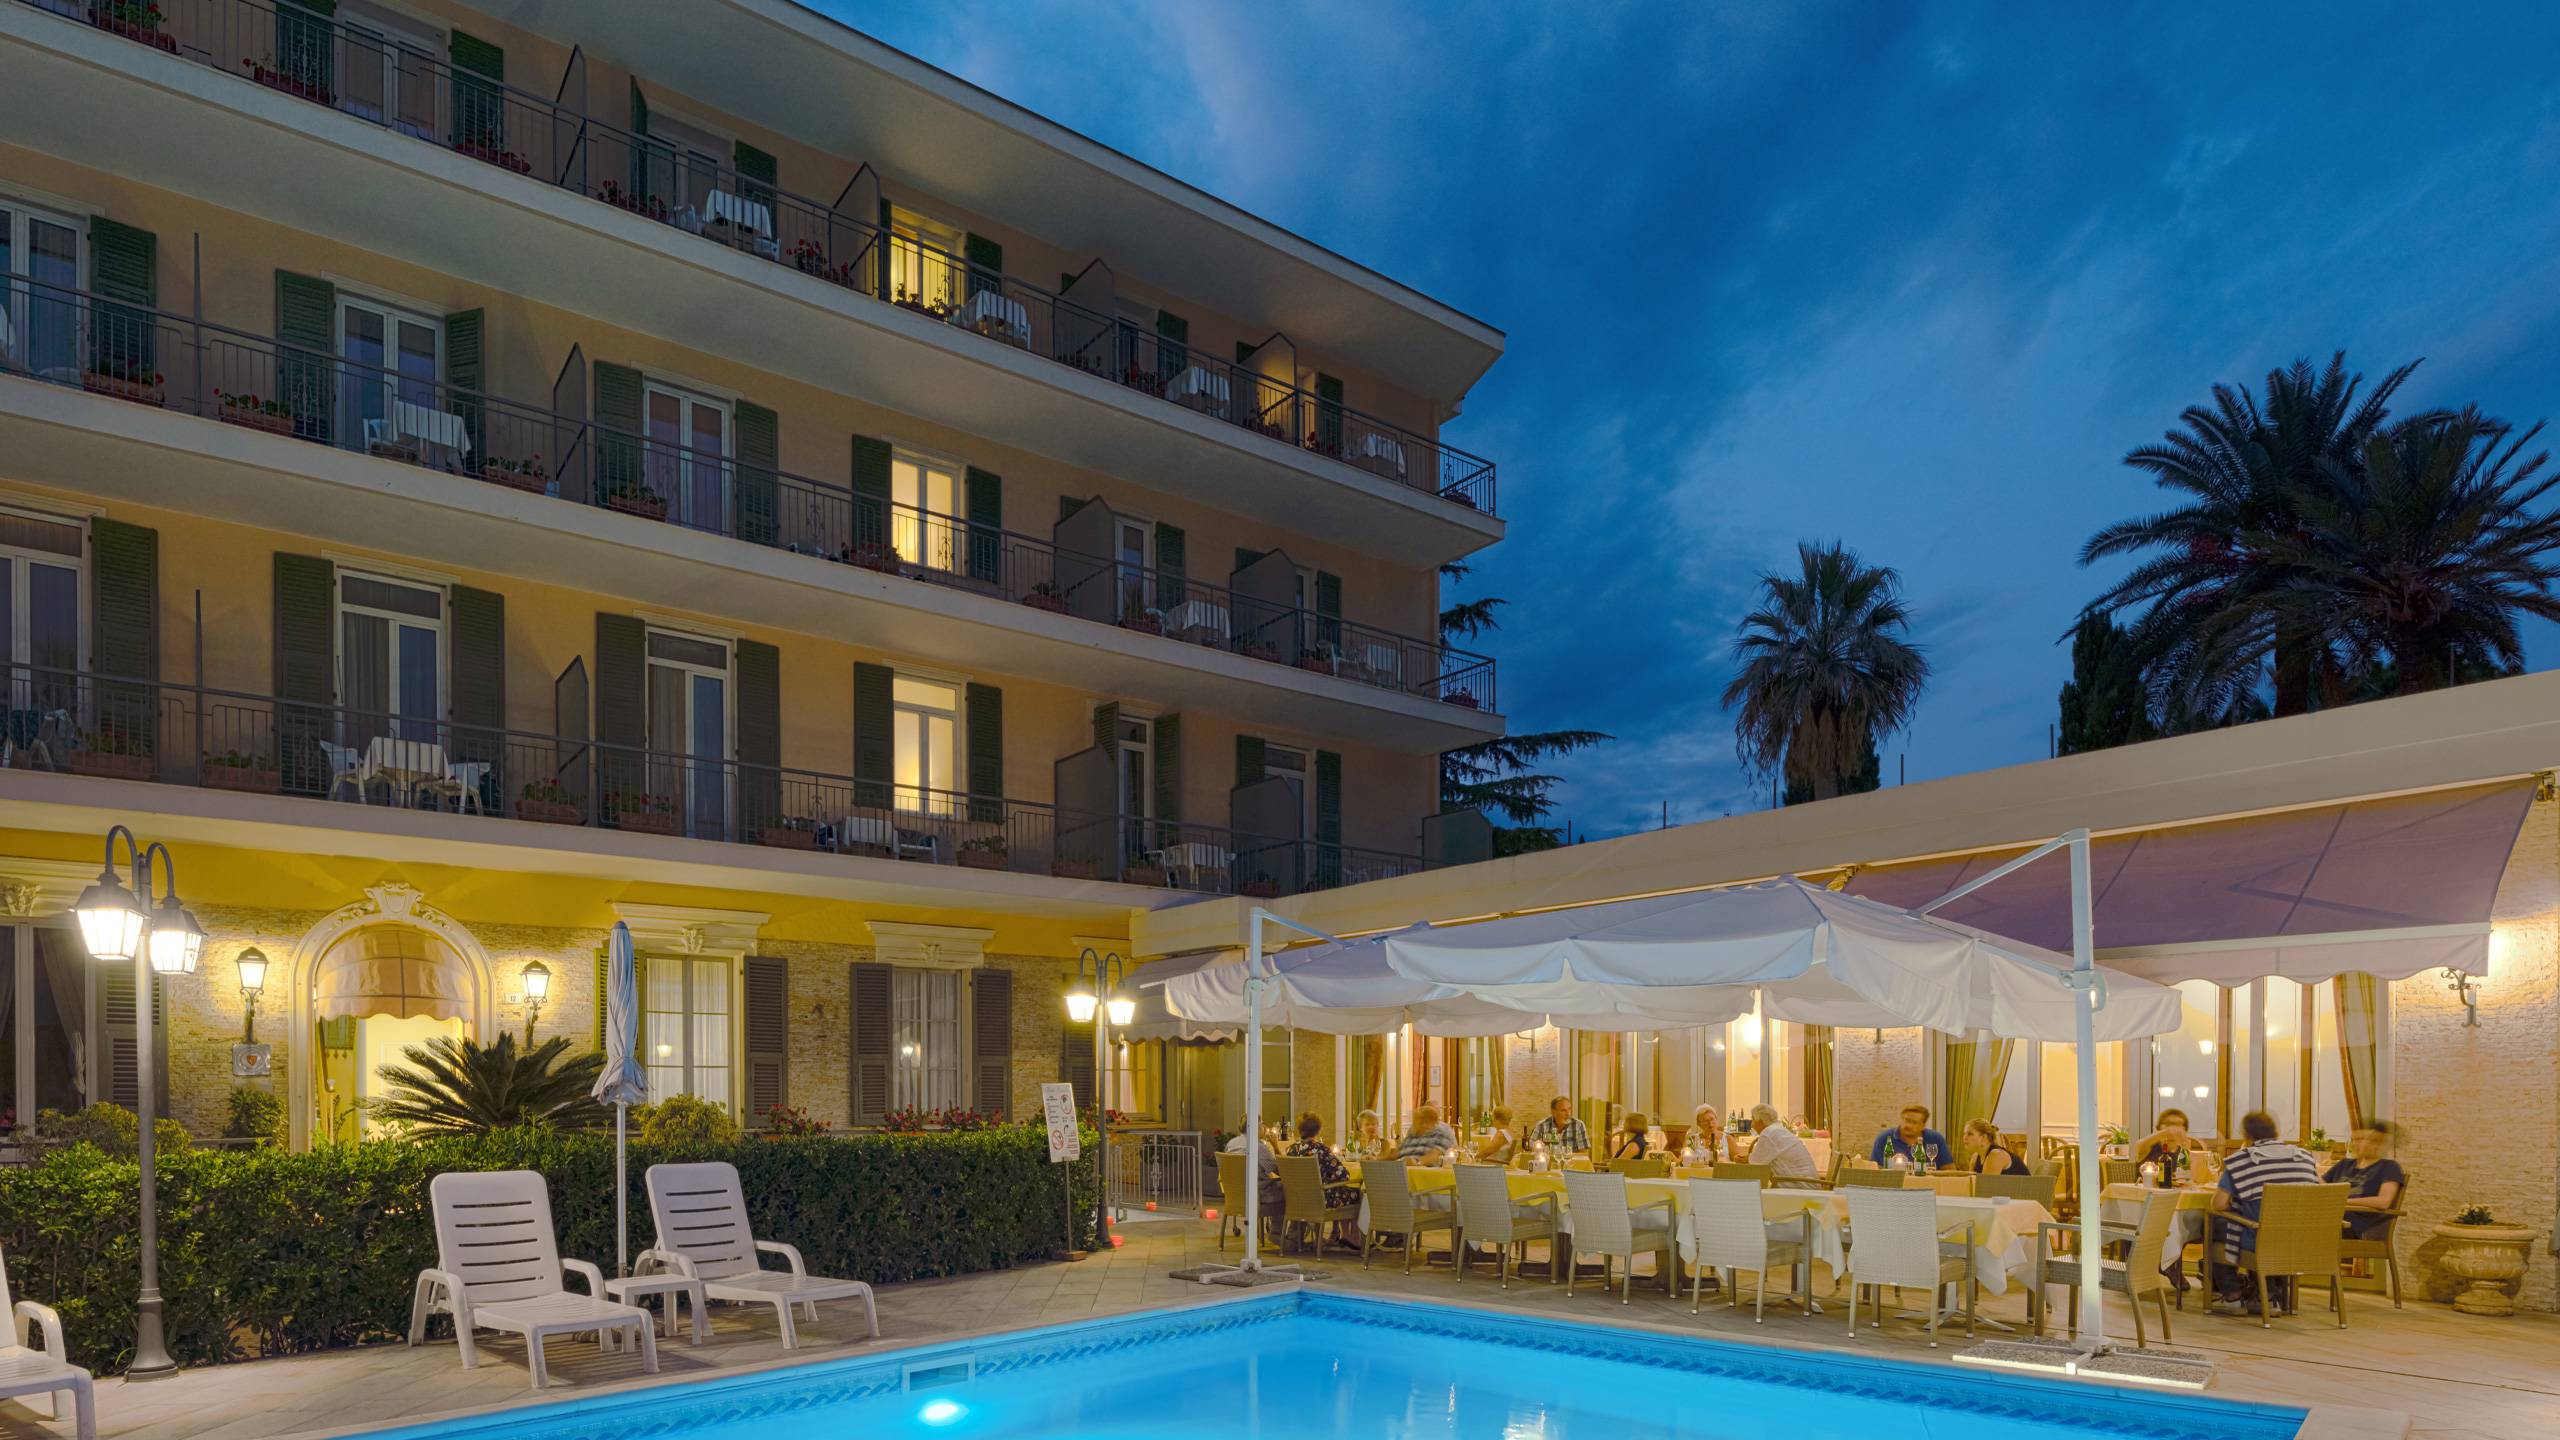 Hotel-Paradiso-cena-bordo-piscina